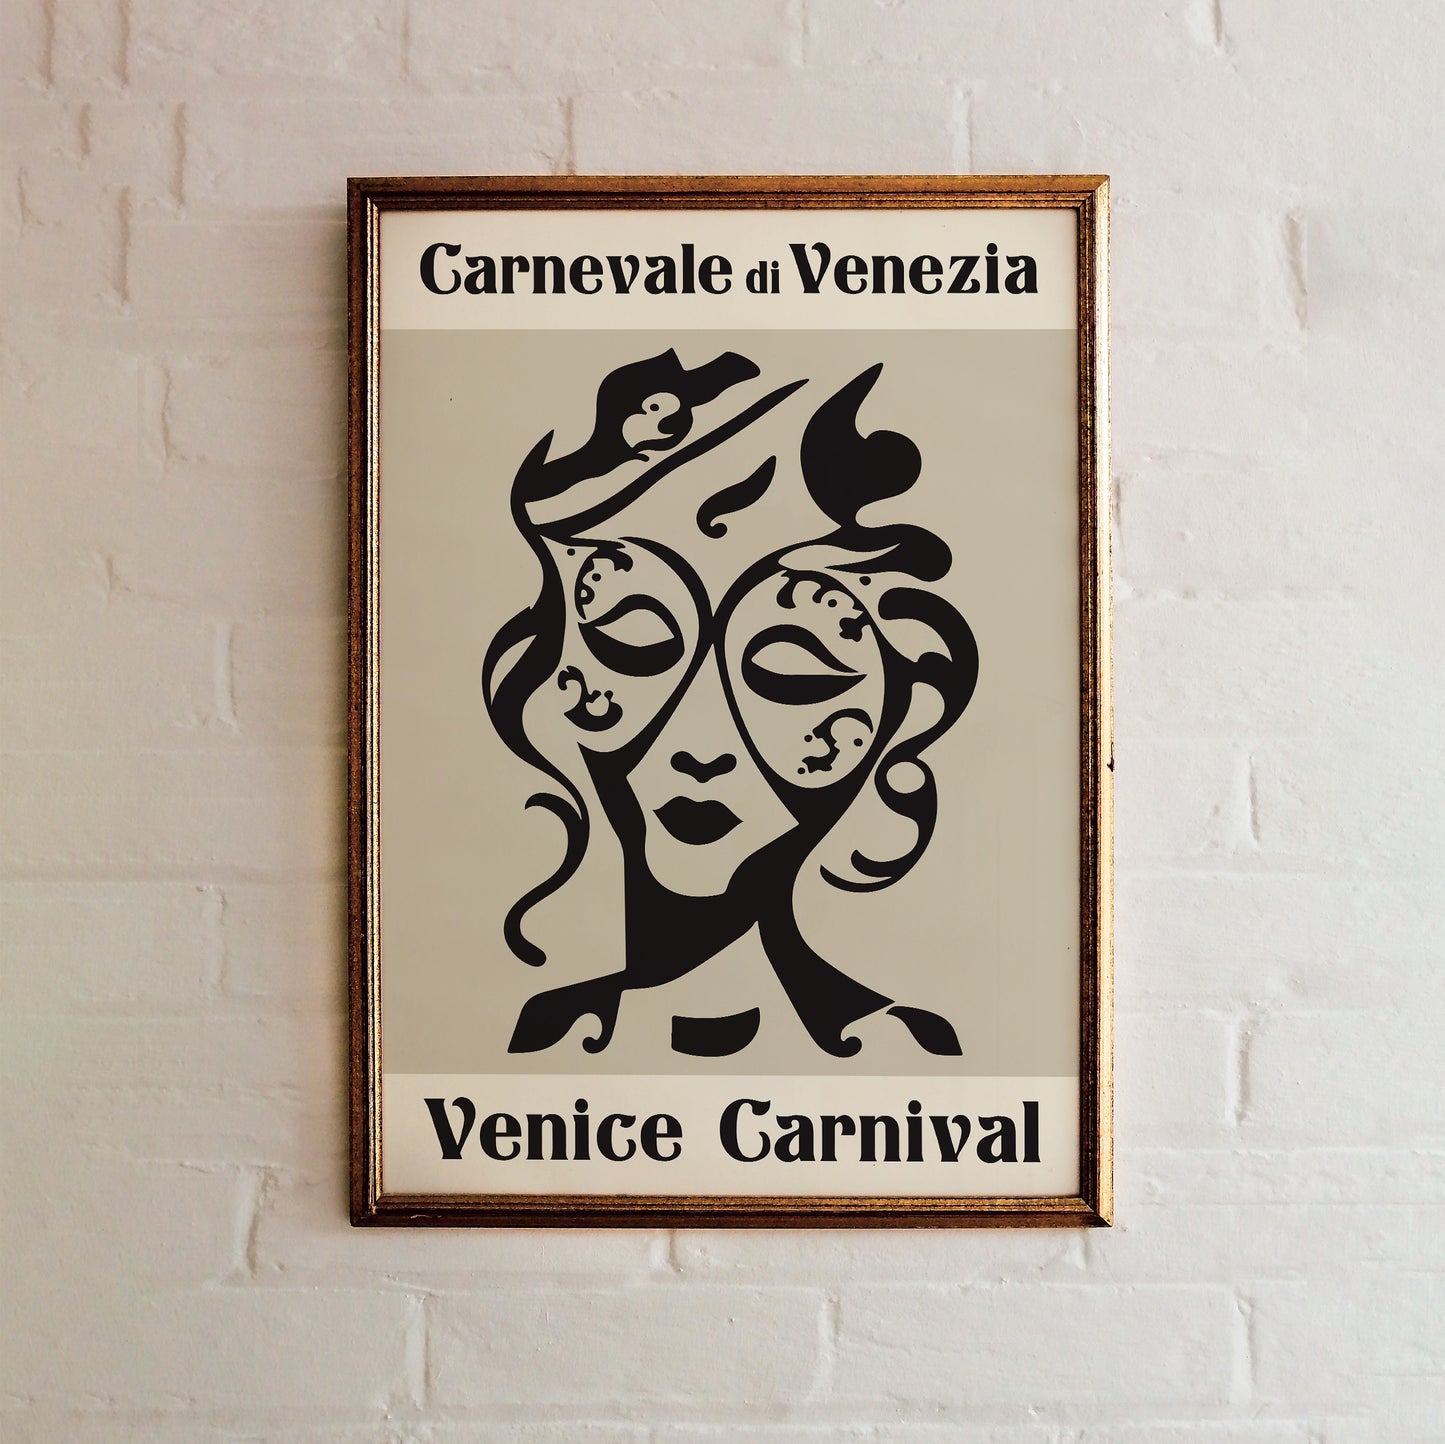 Carnival of Venice Poster